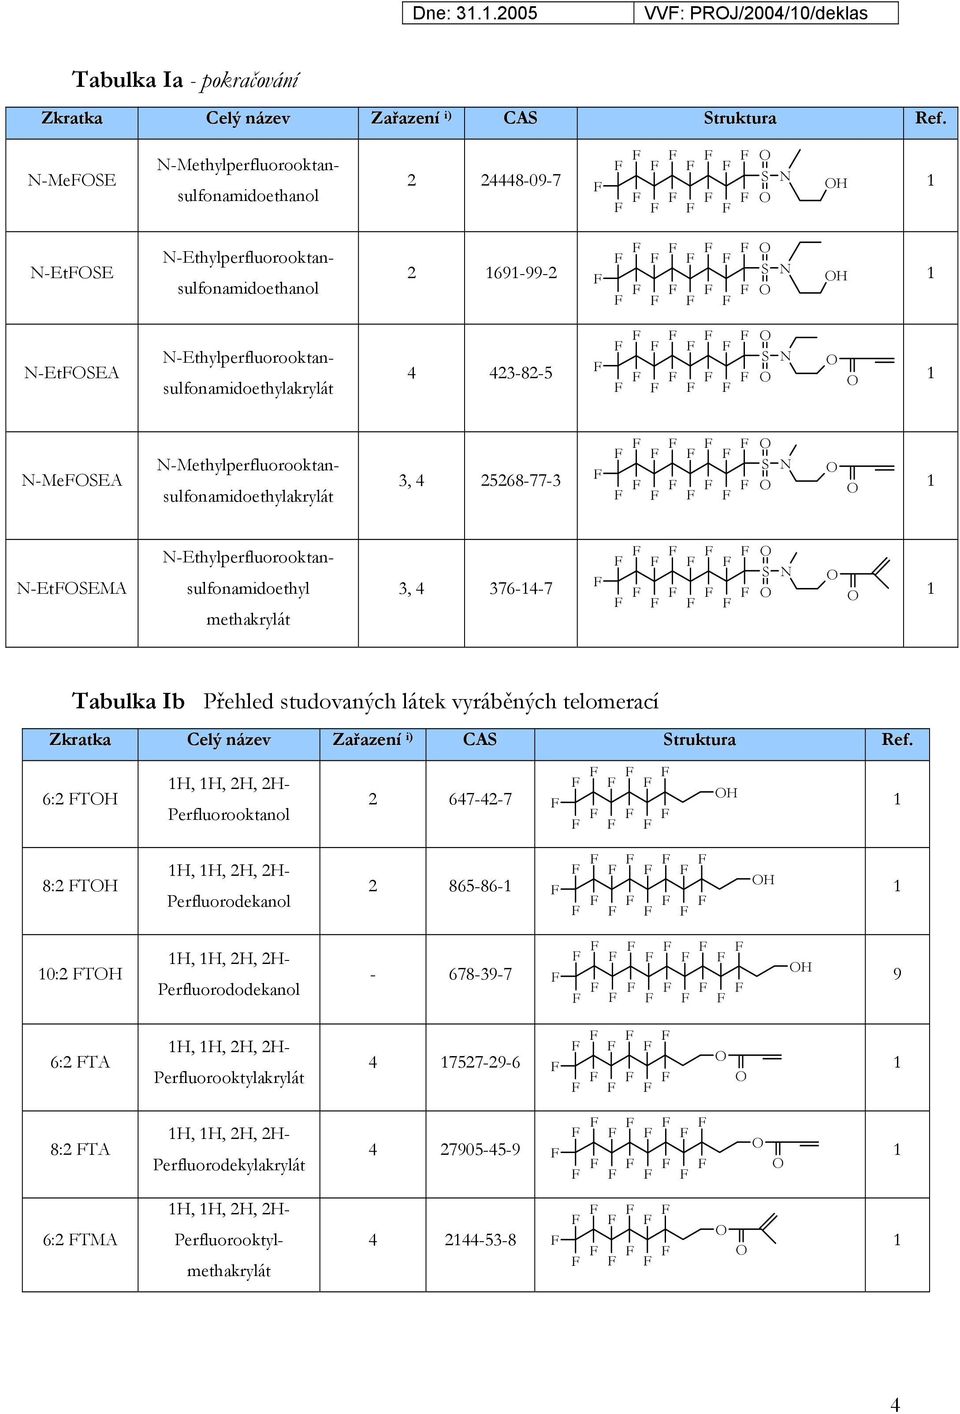 S N 1 N-MeSEA N-Methylperfluorooktansulfonamidoethylakrylát 3, 4 25268-77-3 S N 1 N-EtSEMA N-Ethylperfluorooktansulfonamidoethyl methakrylát 3, 4 376-14-7 S N 1 Tabulka Ib Přehled studovaných látek